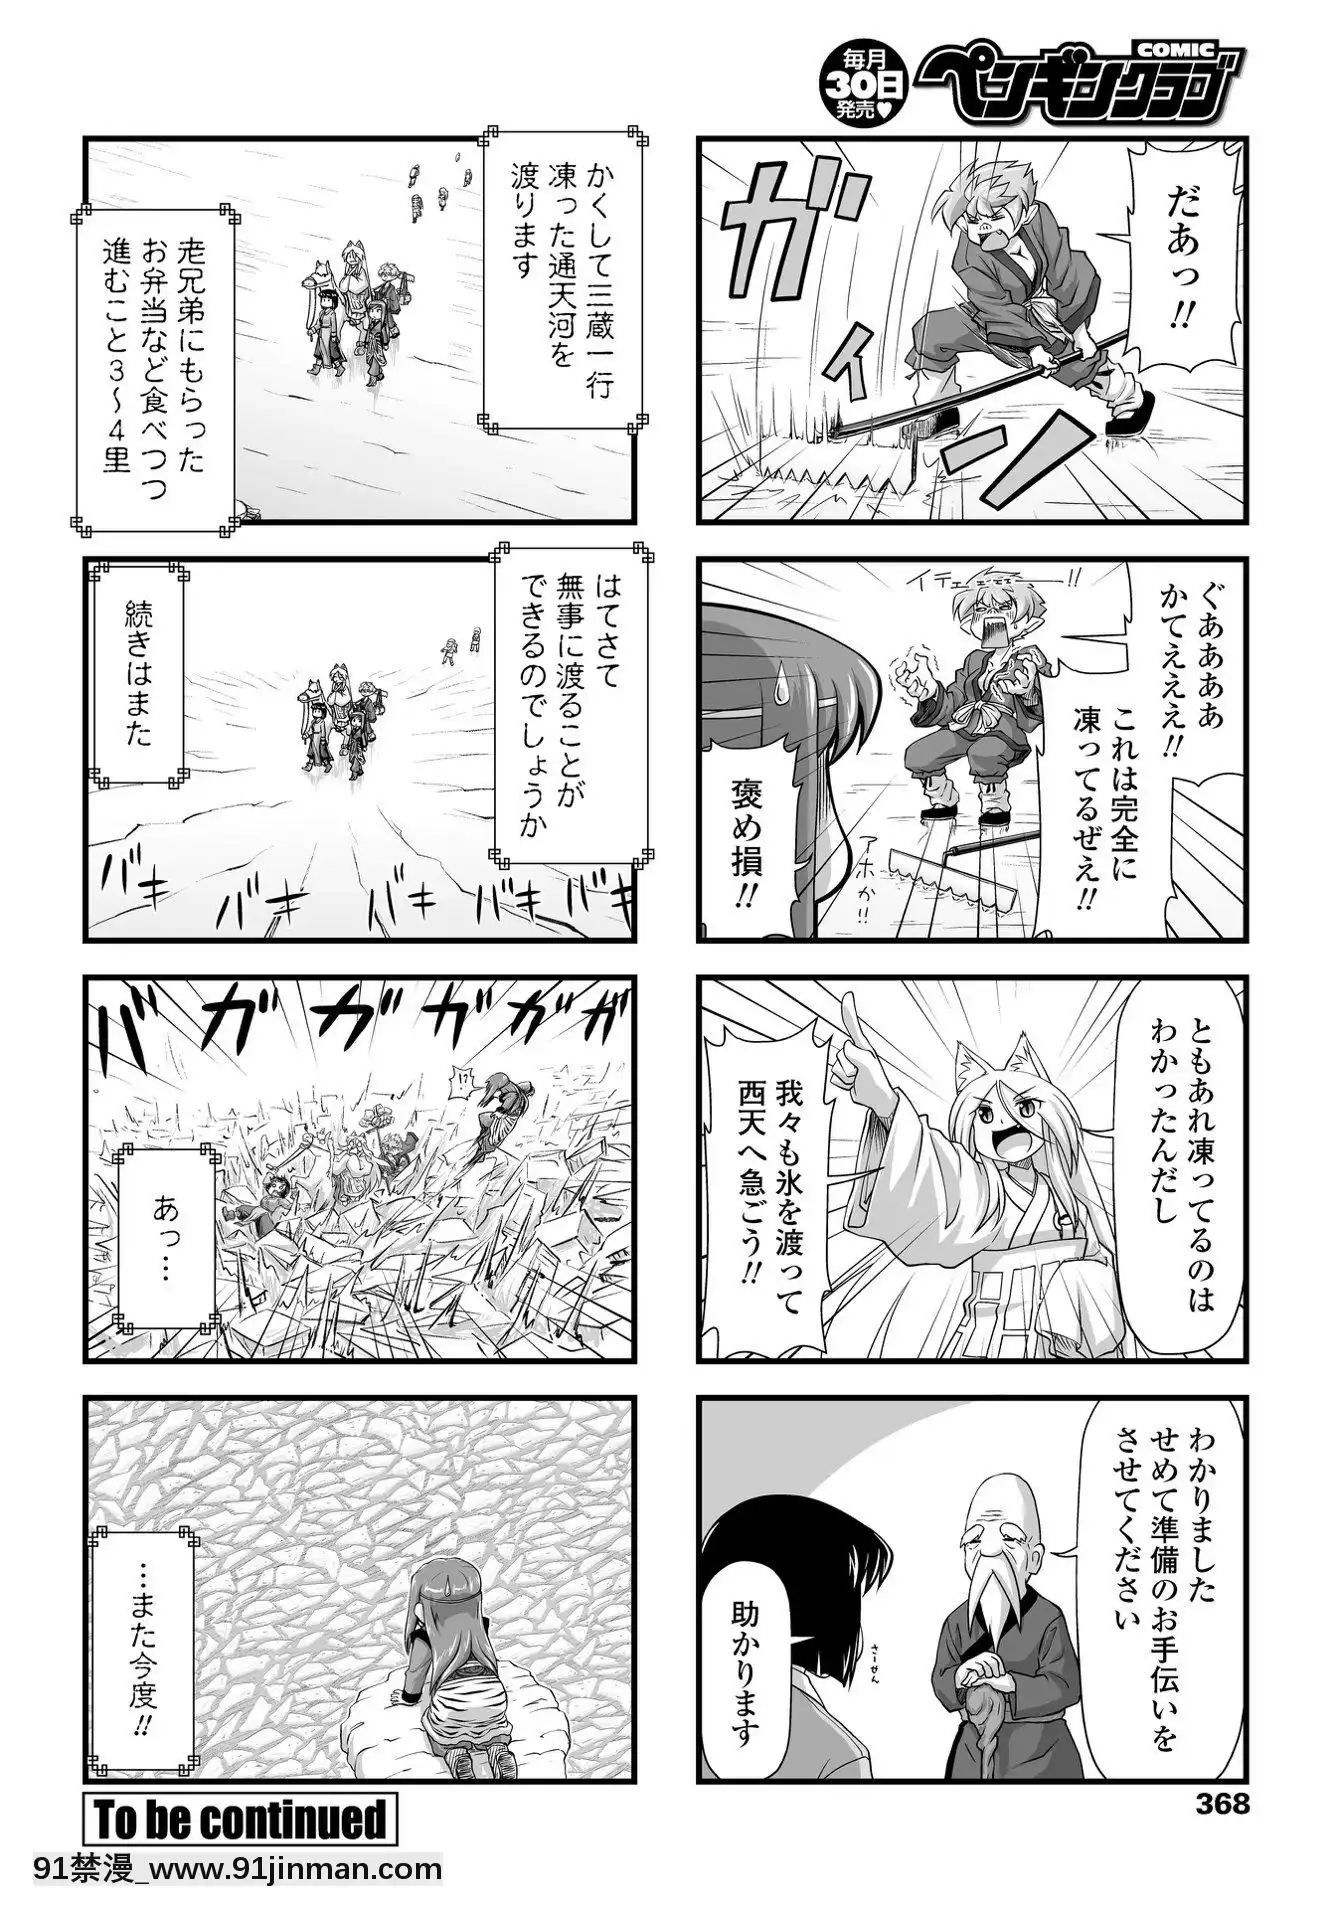 (Truyện tranh Seijin) [Khác] Câu lạc bộ chim cánh cụt COMIC tháng 5 năm 2020 [Kỹ thuật số]【hentai co chau】